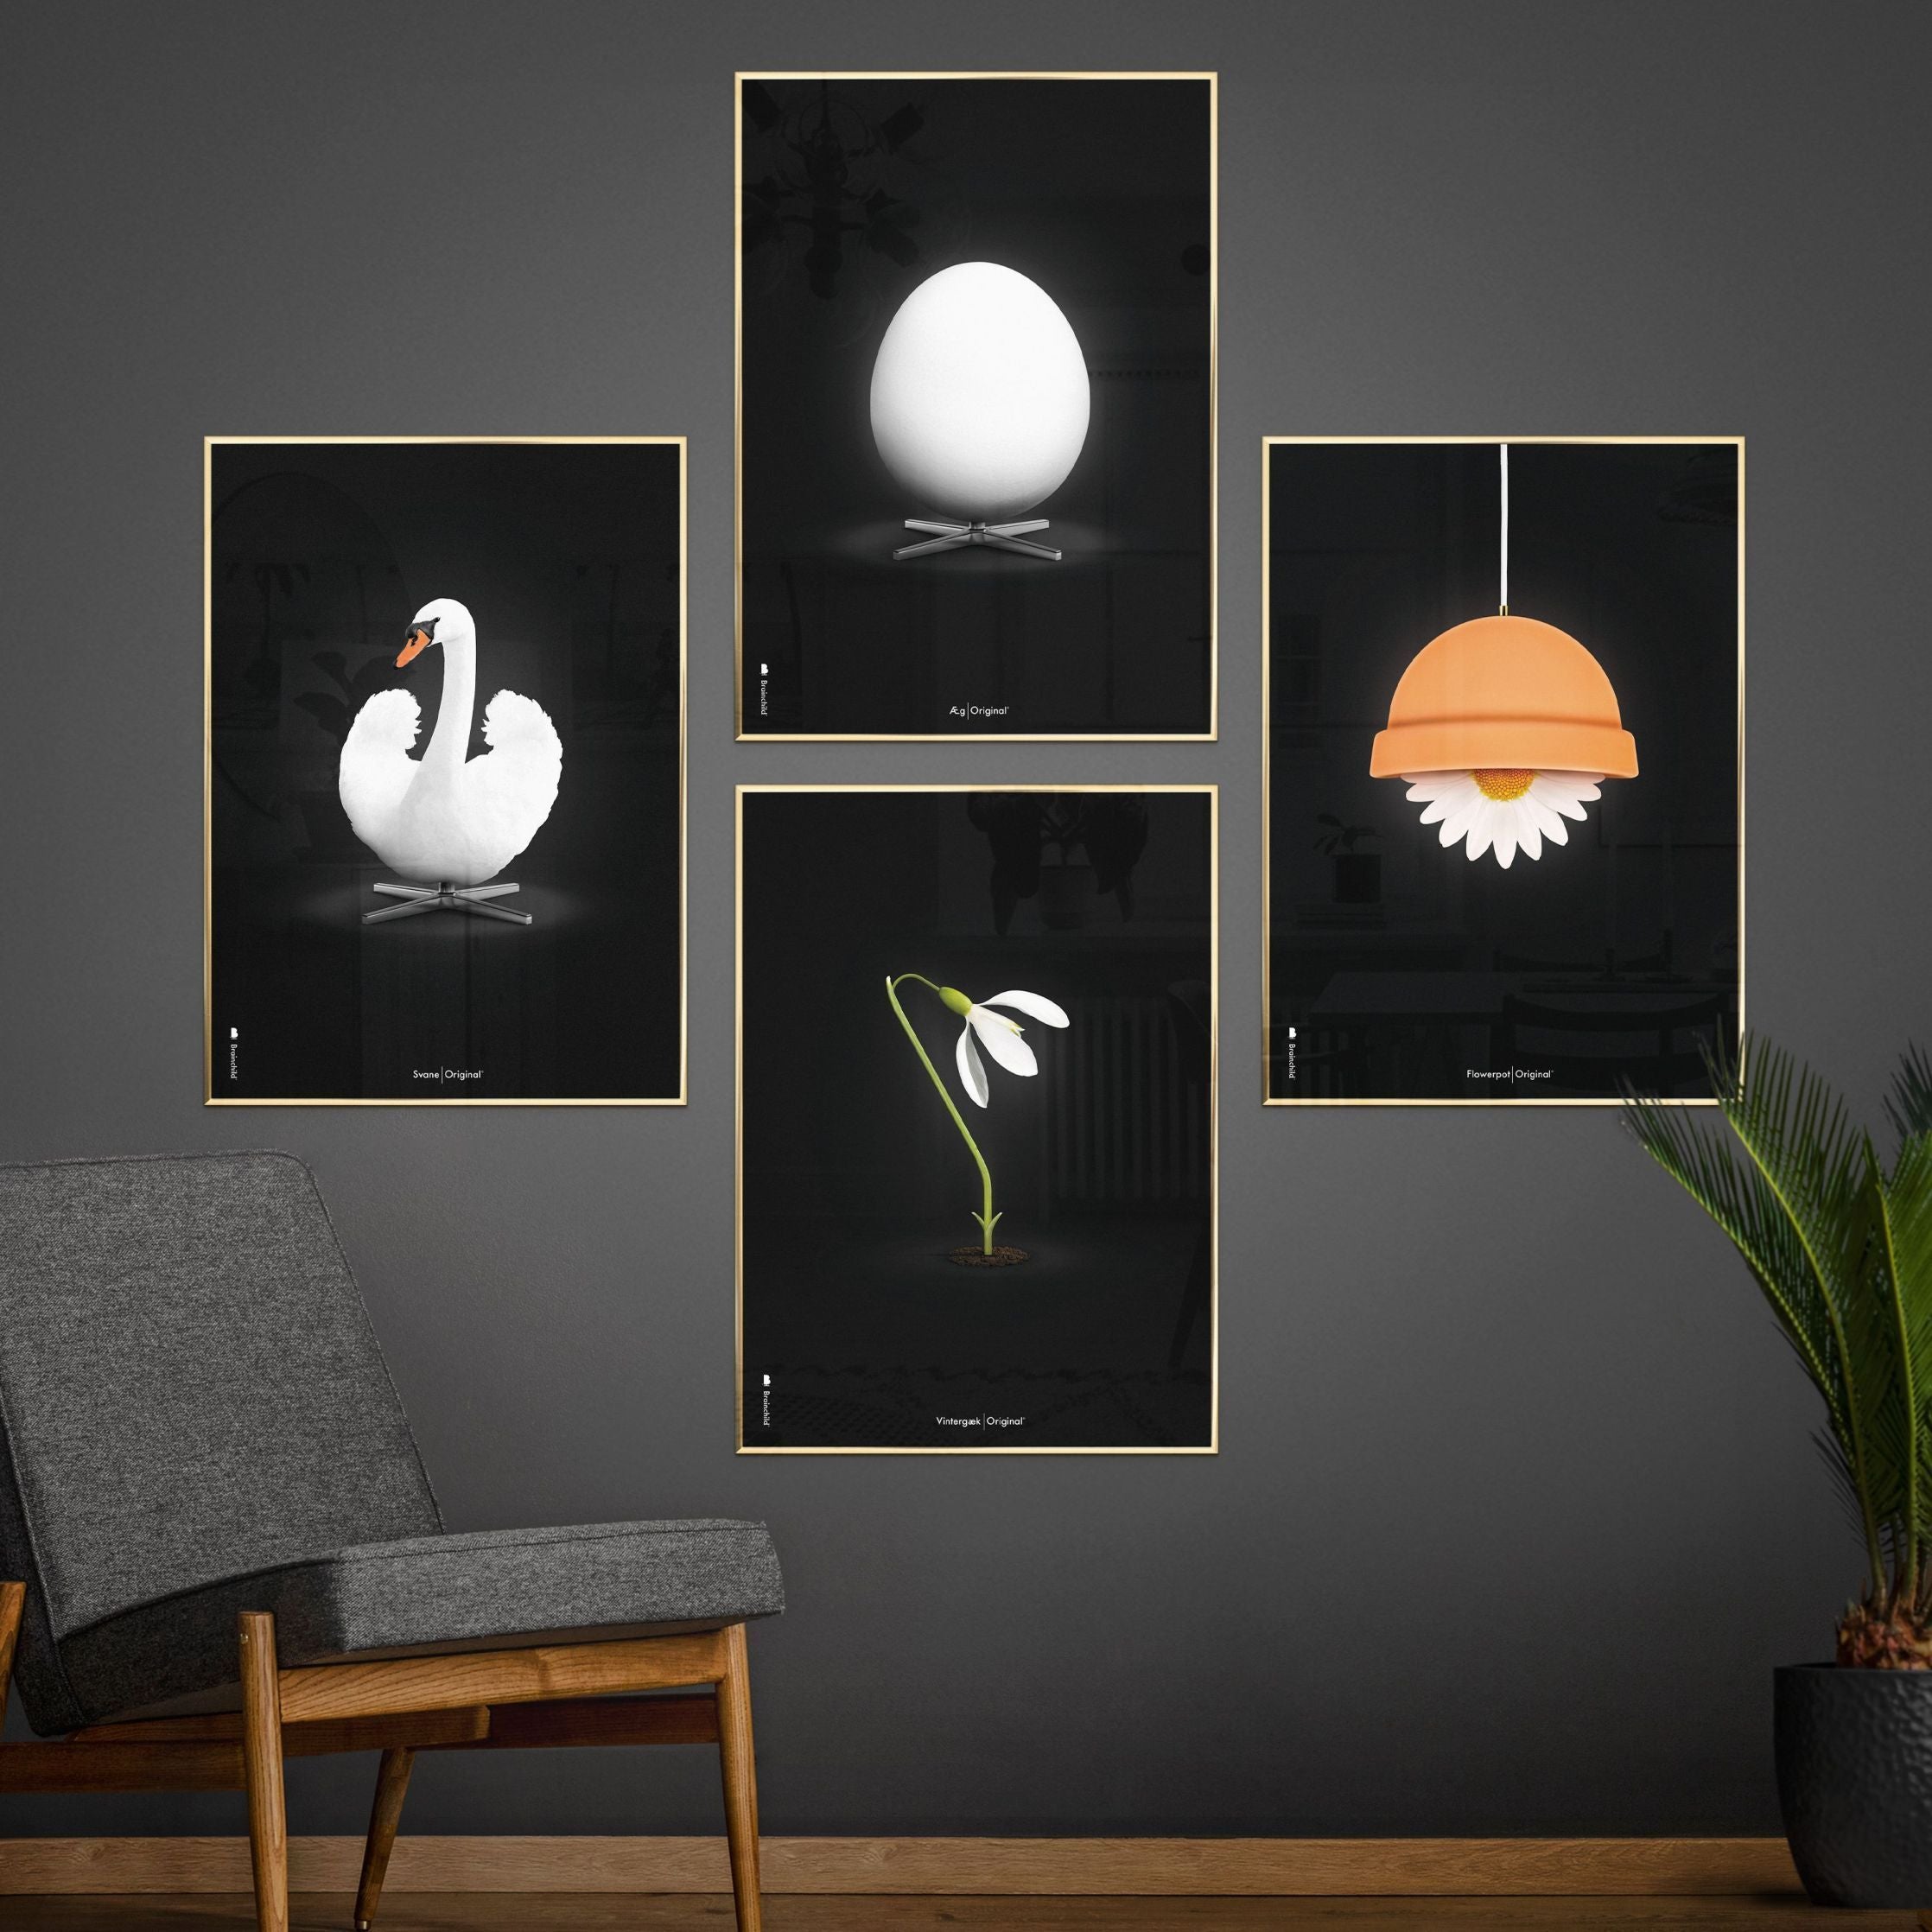 brainchild Egg Classic Poster, frame gemaakt van licht hout 30x40 cm, zwarte achtergrond